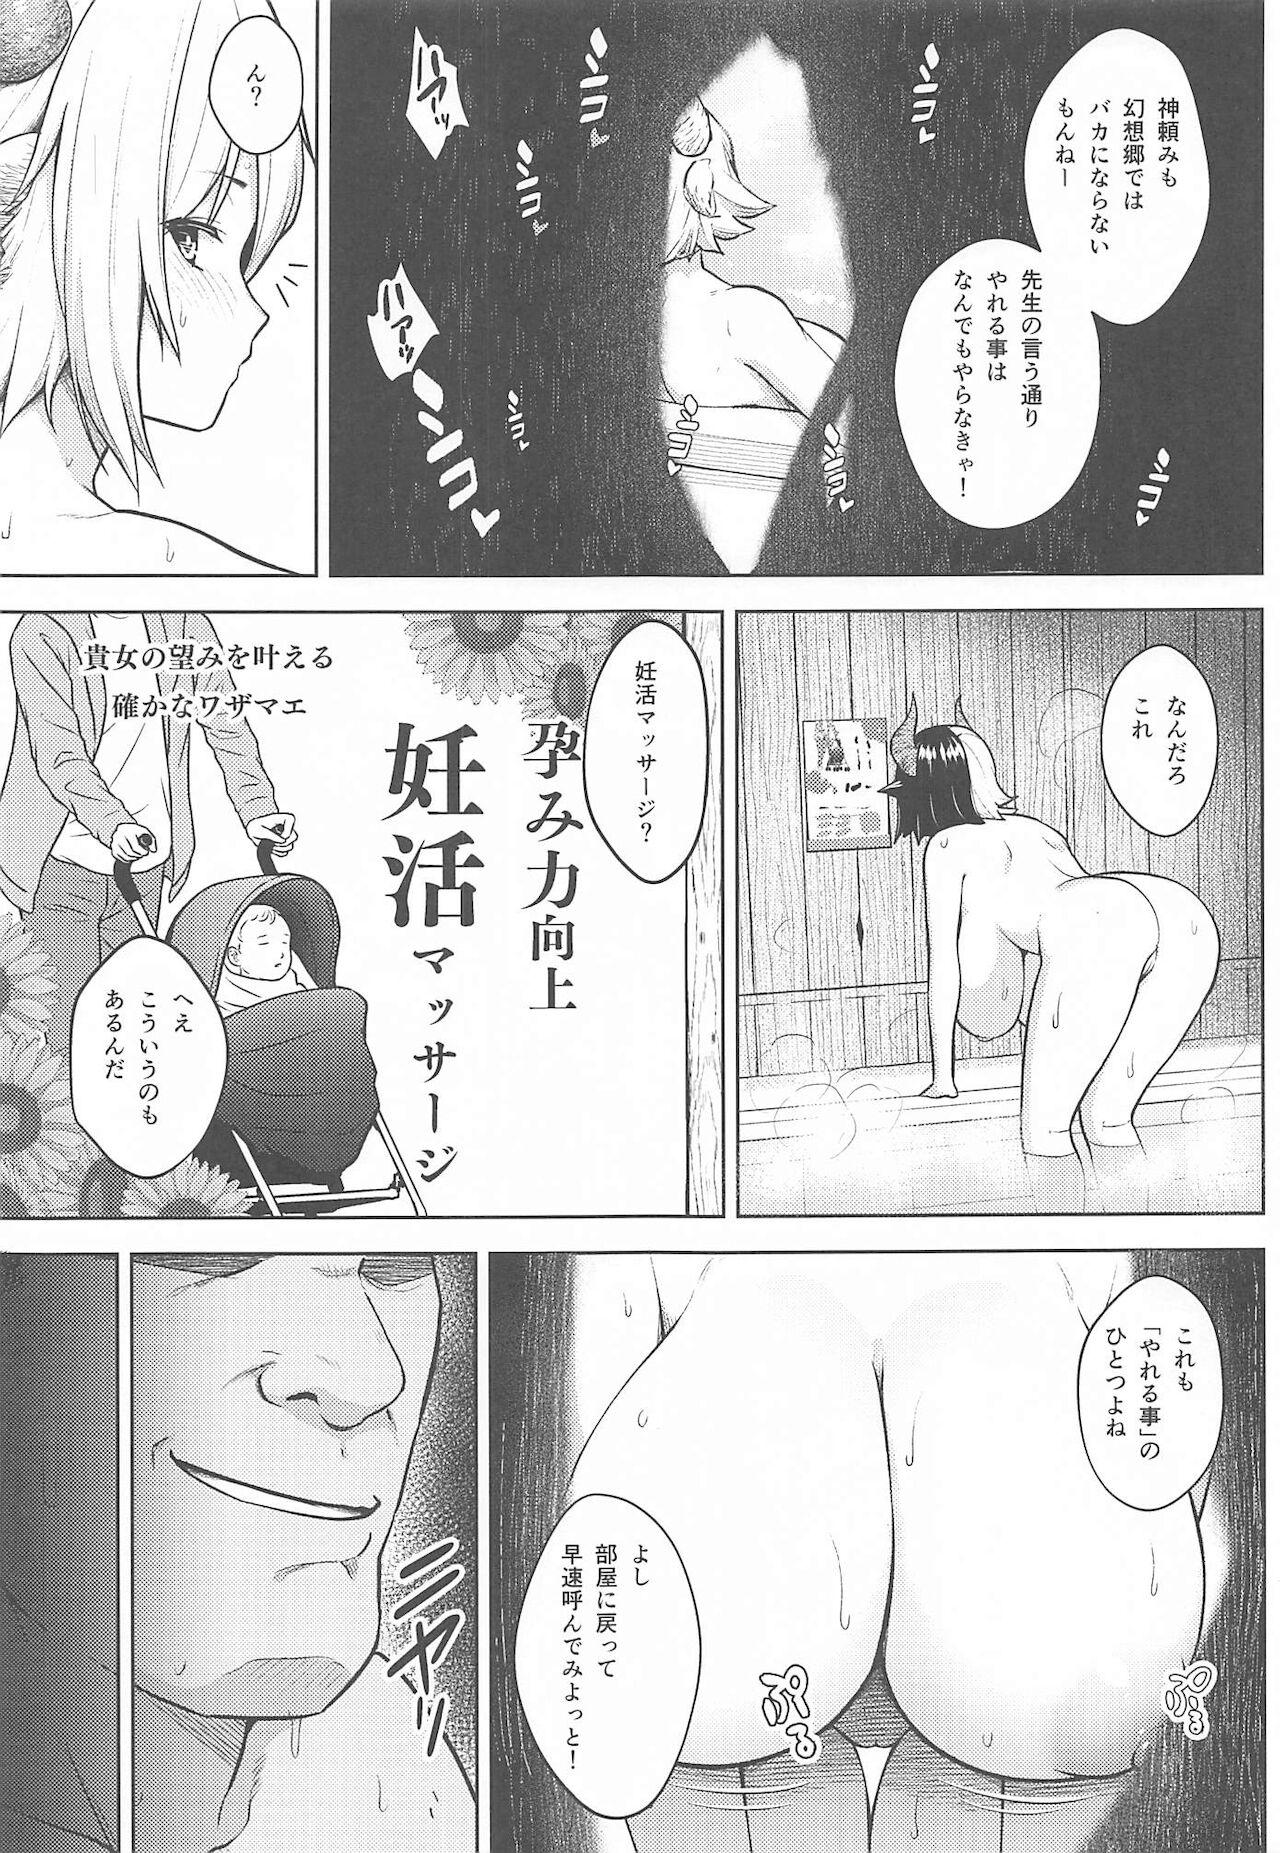 Funny Oku-san no Oppai ga Dekasugiru no ga Warui! 4 - Touhou project Highheels - Page 6